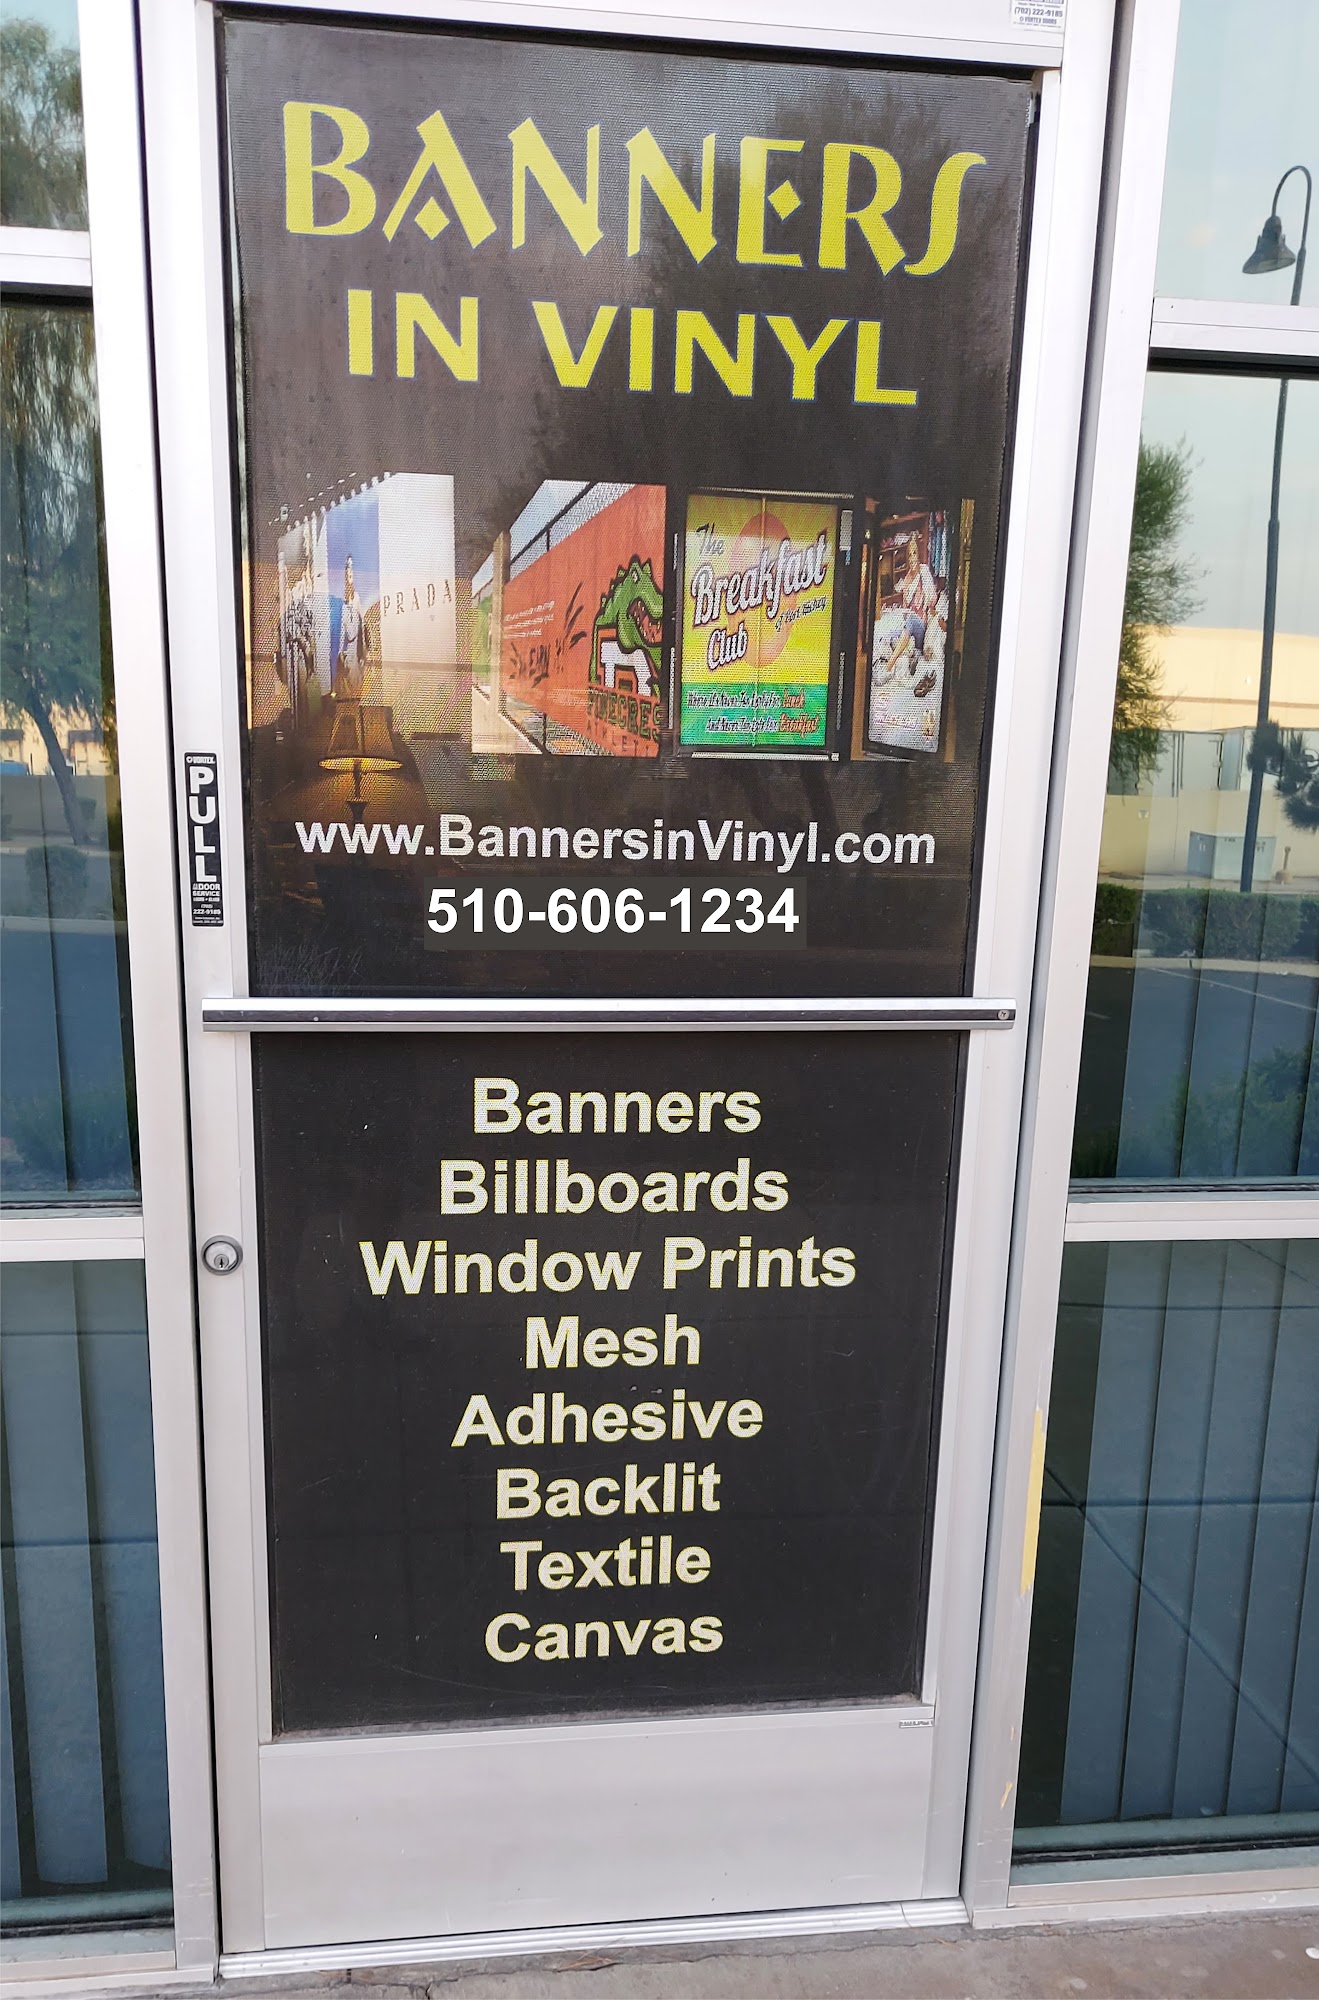 Banners In Vinyl